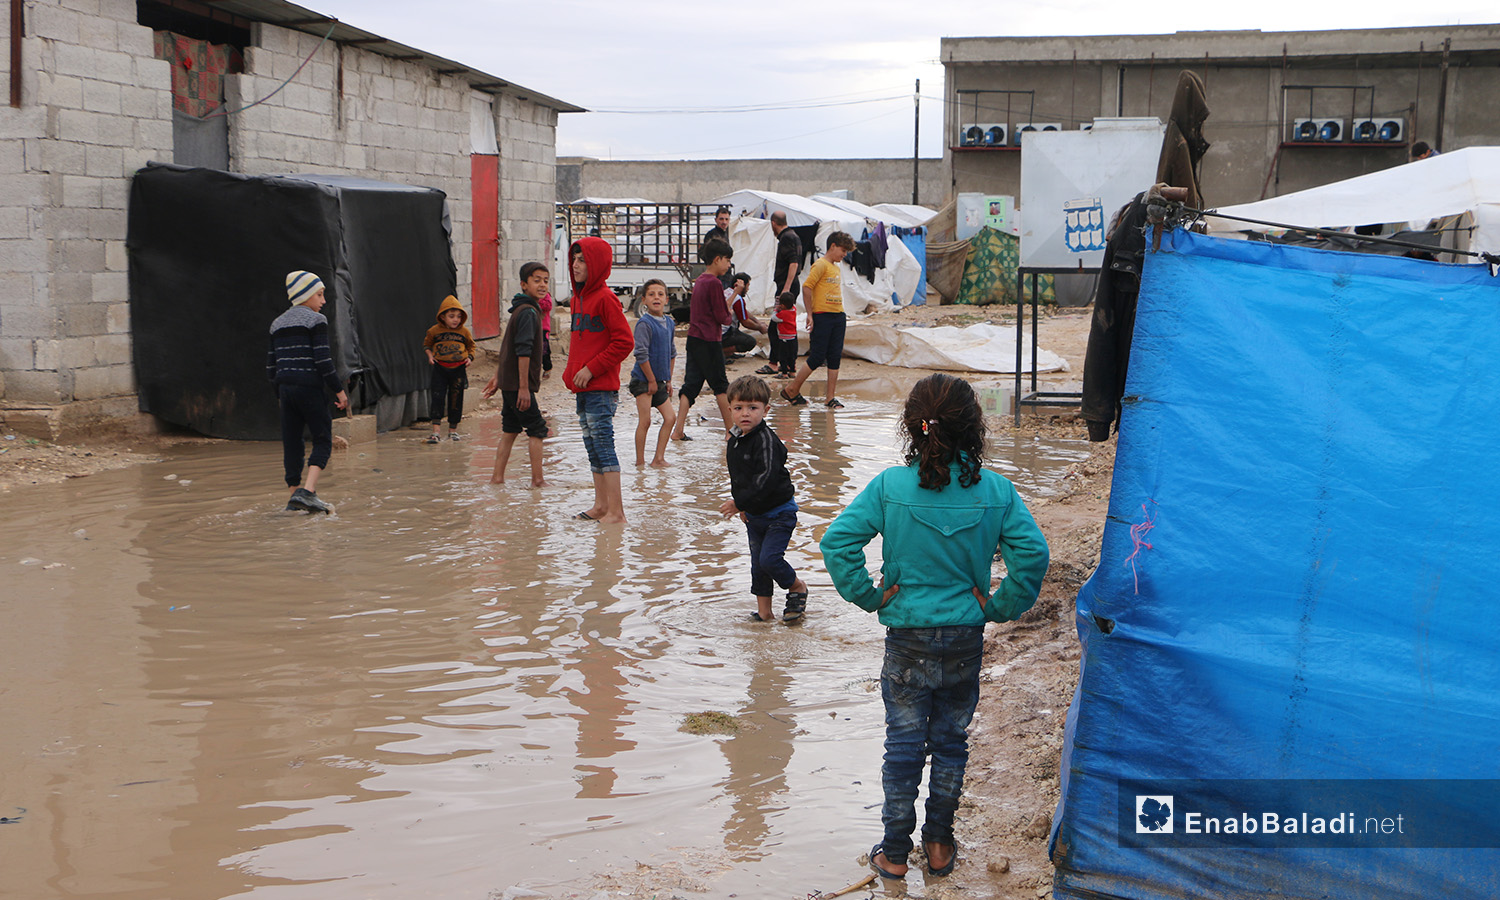 يمشي الأطفال وسط الماء المتجمع داخل وخارج الخيام في مخيم "الفلاح" بريف حلب الشمالي  - 4 تشرين الثاني 2020 (عنب بلدي/ عبد السلام مجعان)